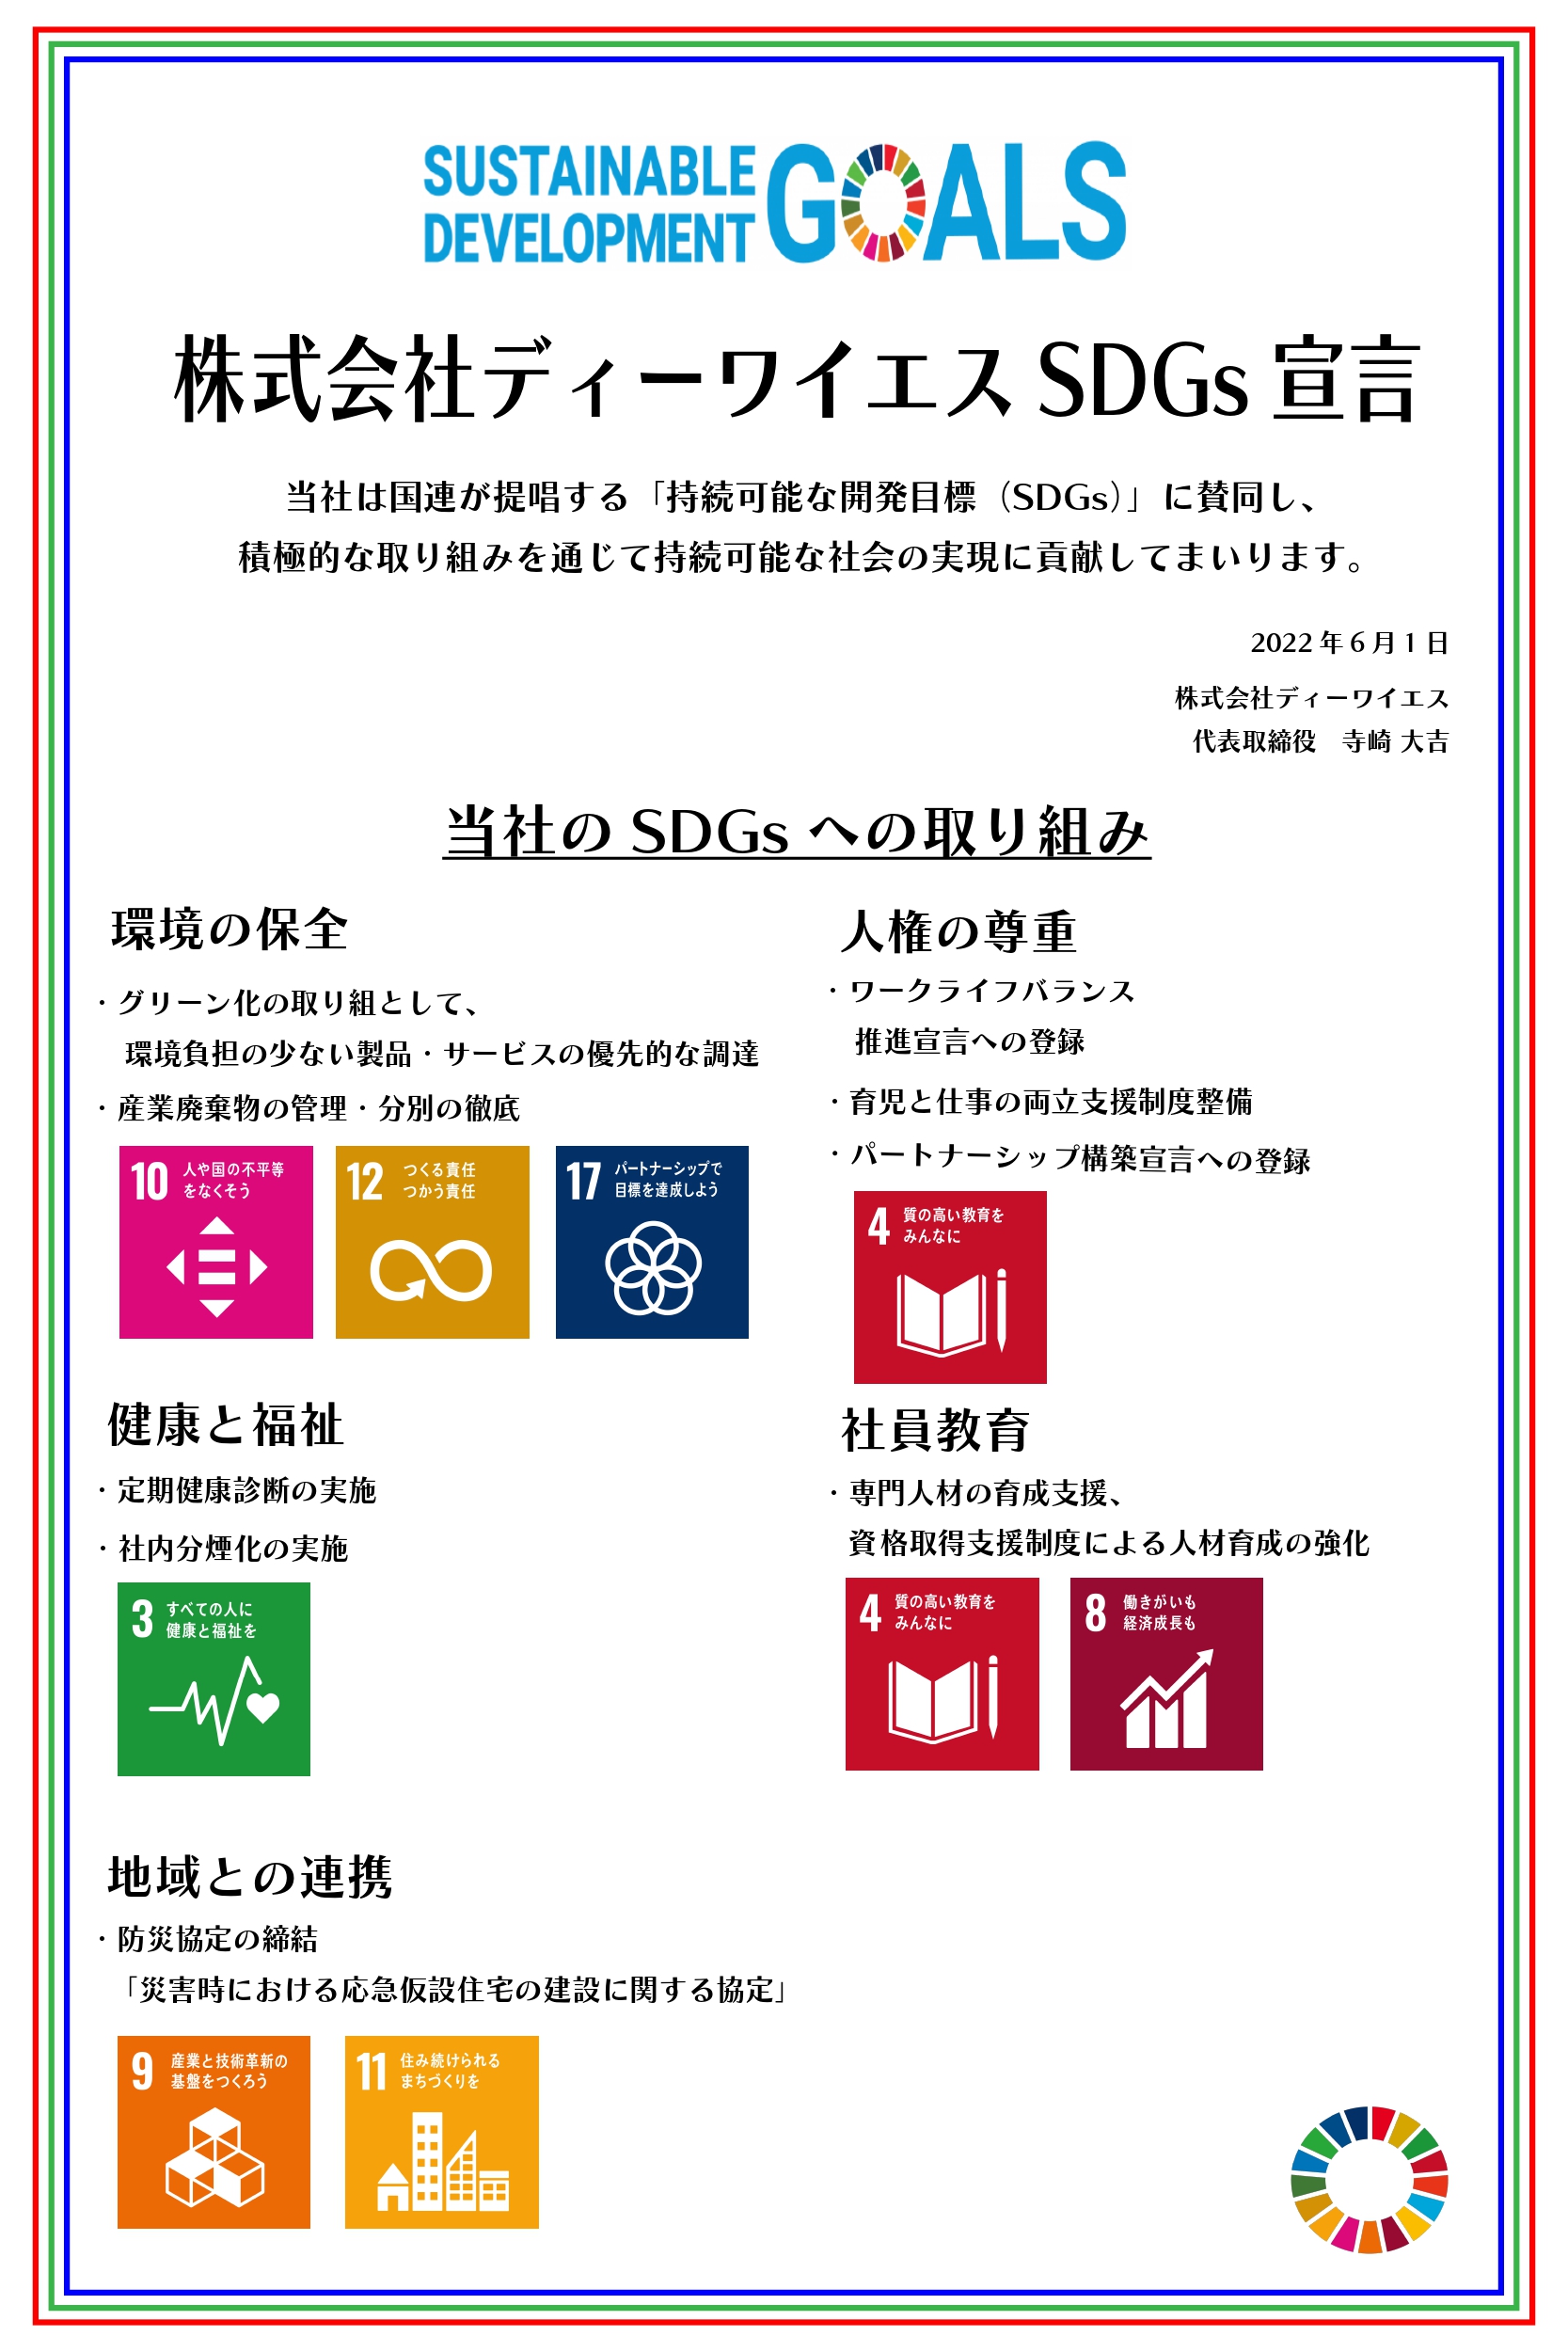 SDGs見本1_page-0001 (1)